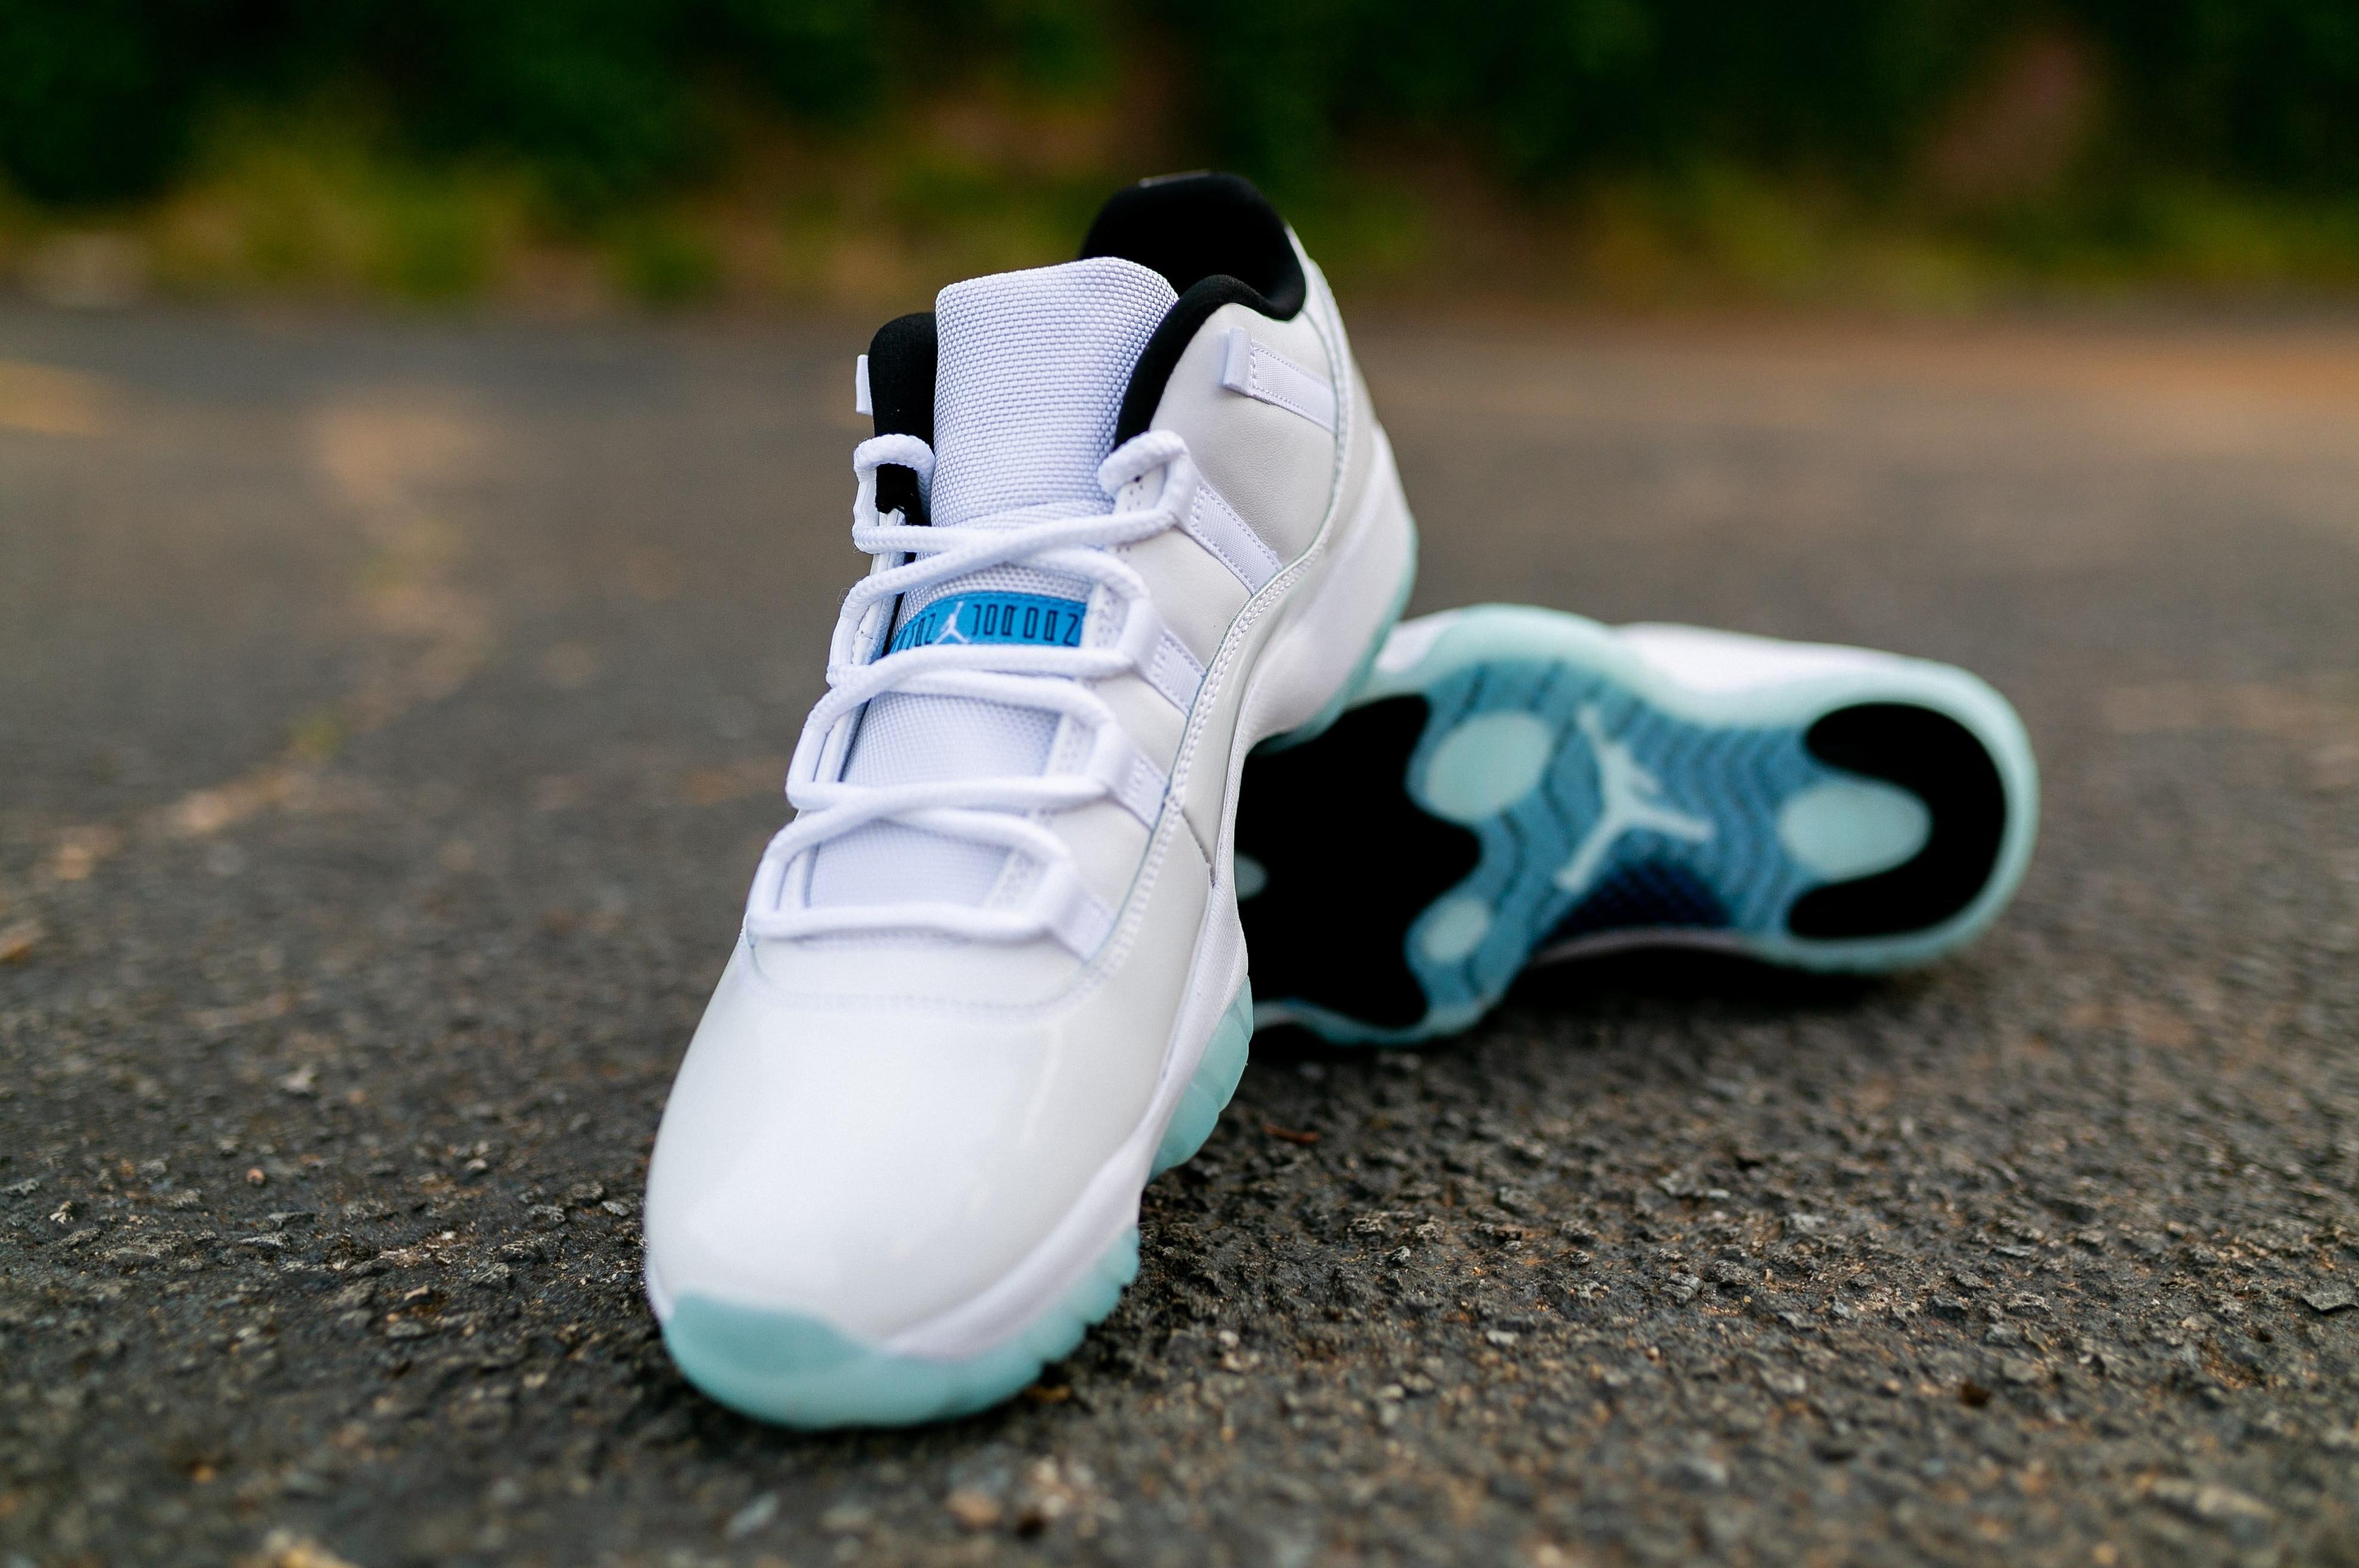 Sneakers Release Jordan 11 Retro Low Legend Blue Launches 5 7